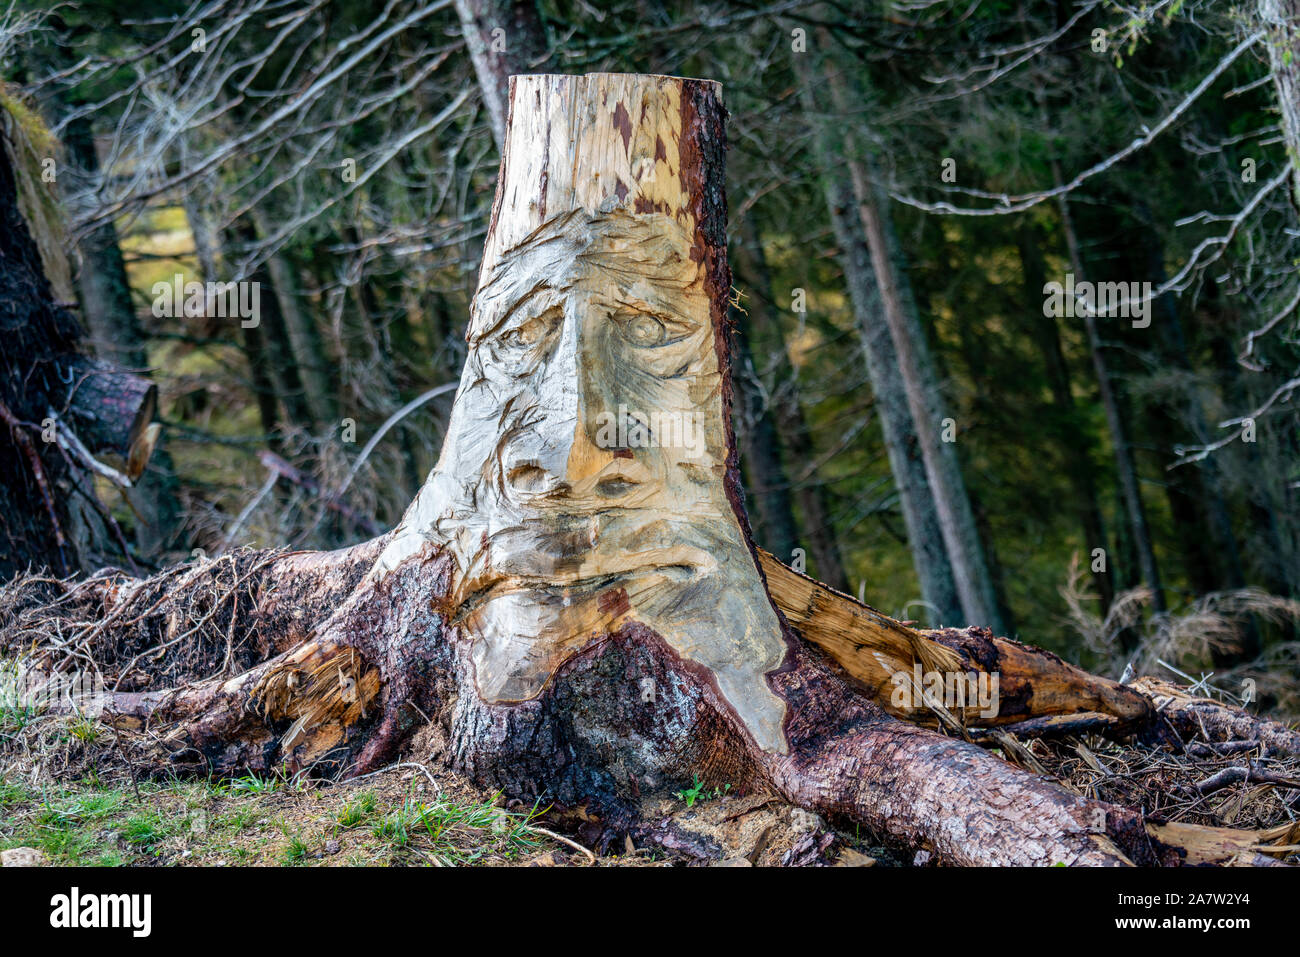 Lustiges Gesicht geschnitzt in einem hölzernen Baumstamm in einem Wald wächst in den italienischen Alpen in der Nähe von Voels am Schlern Stockfoto